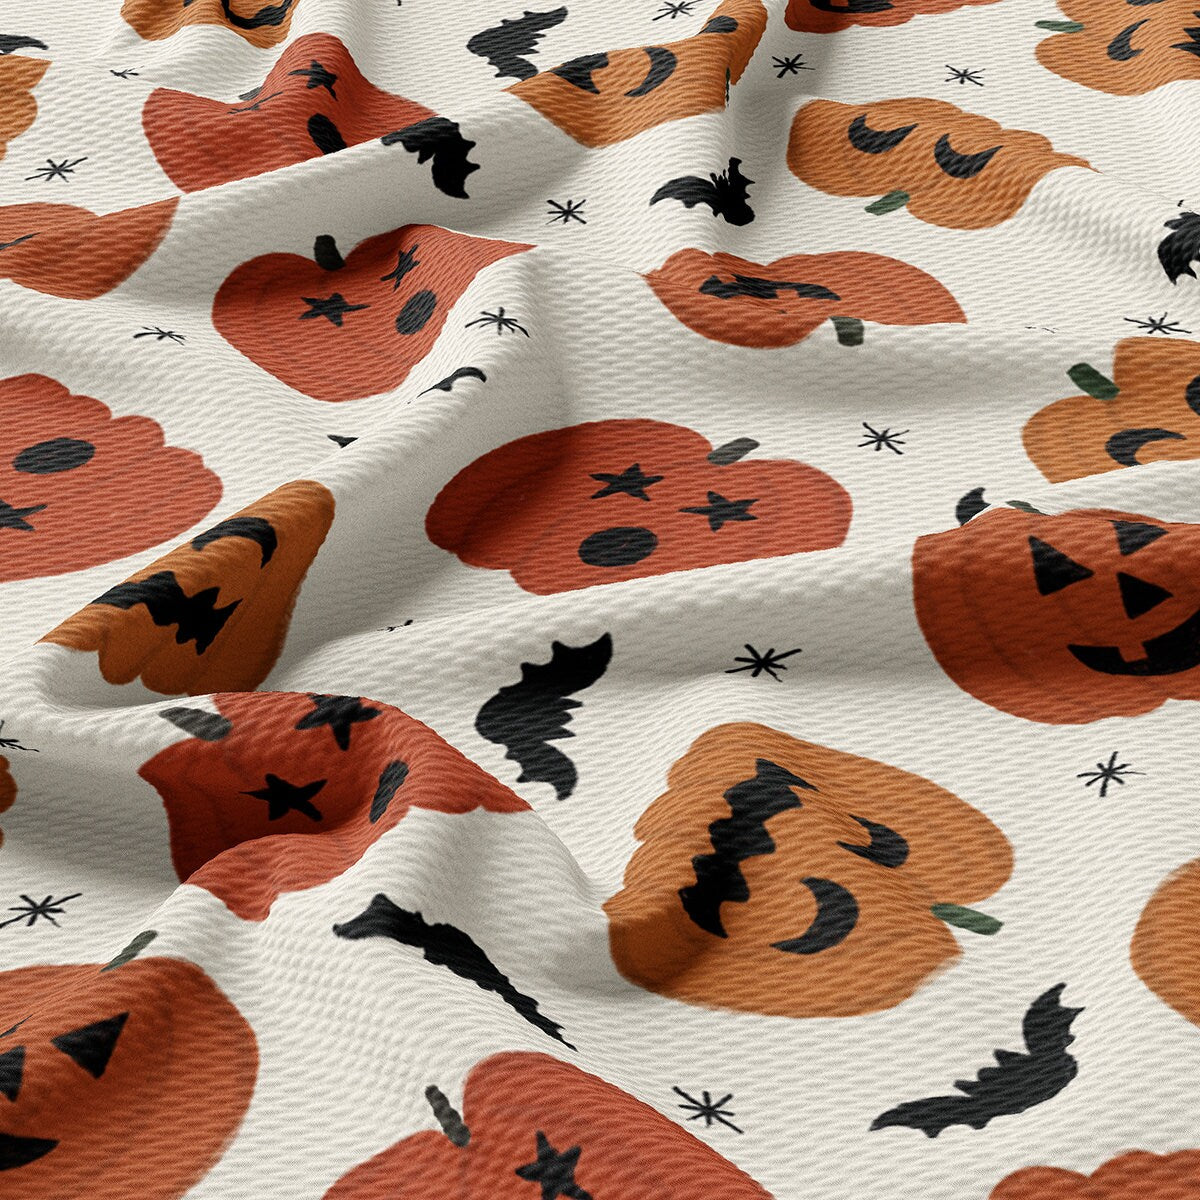 Autumn Fall Halloween Bullet Textured Fabric AA1838